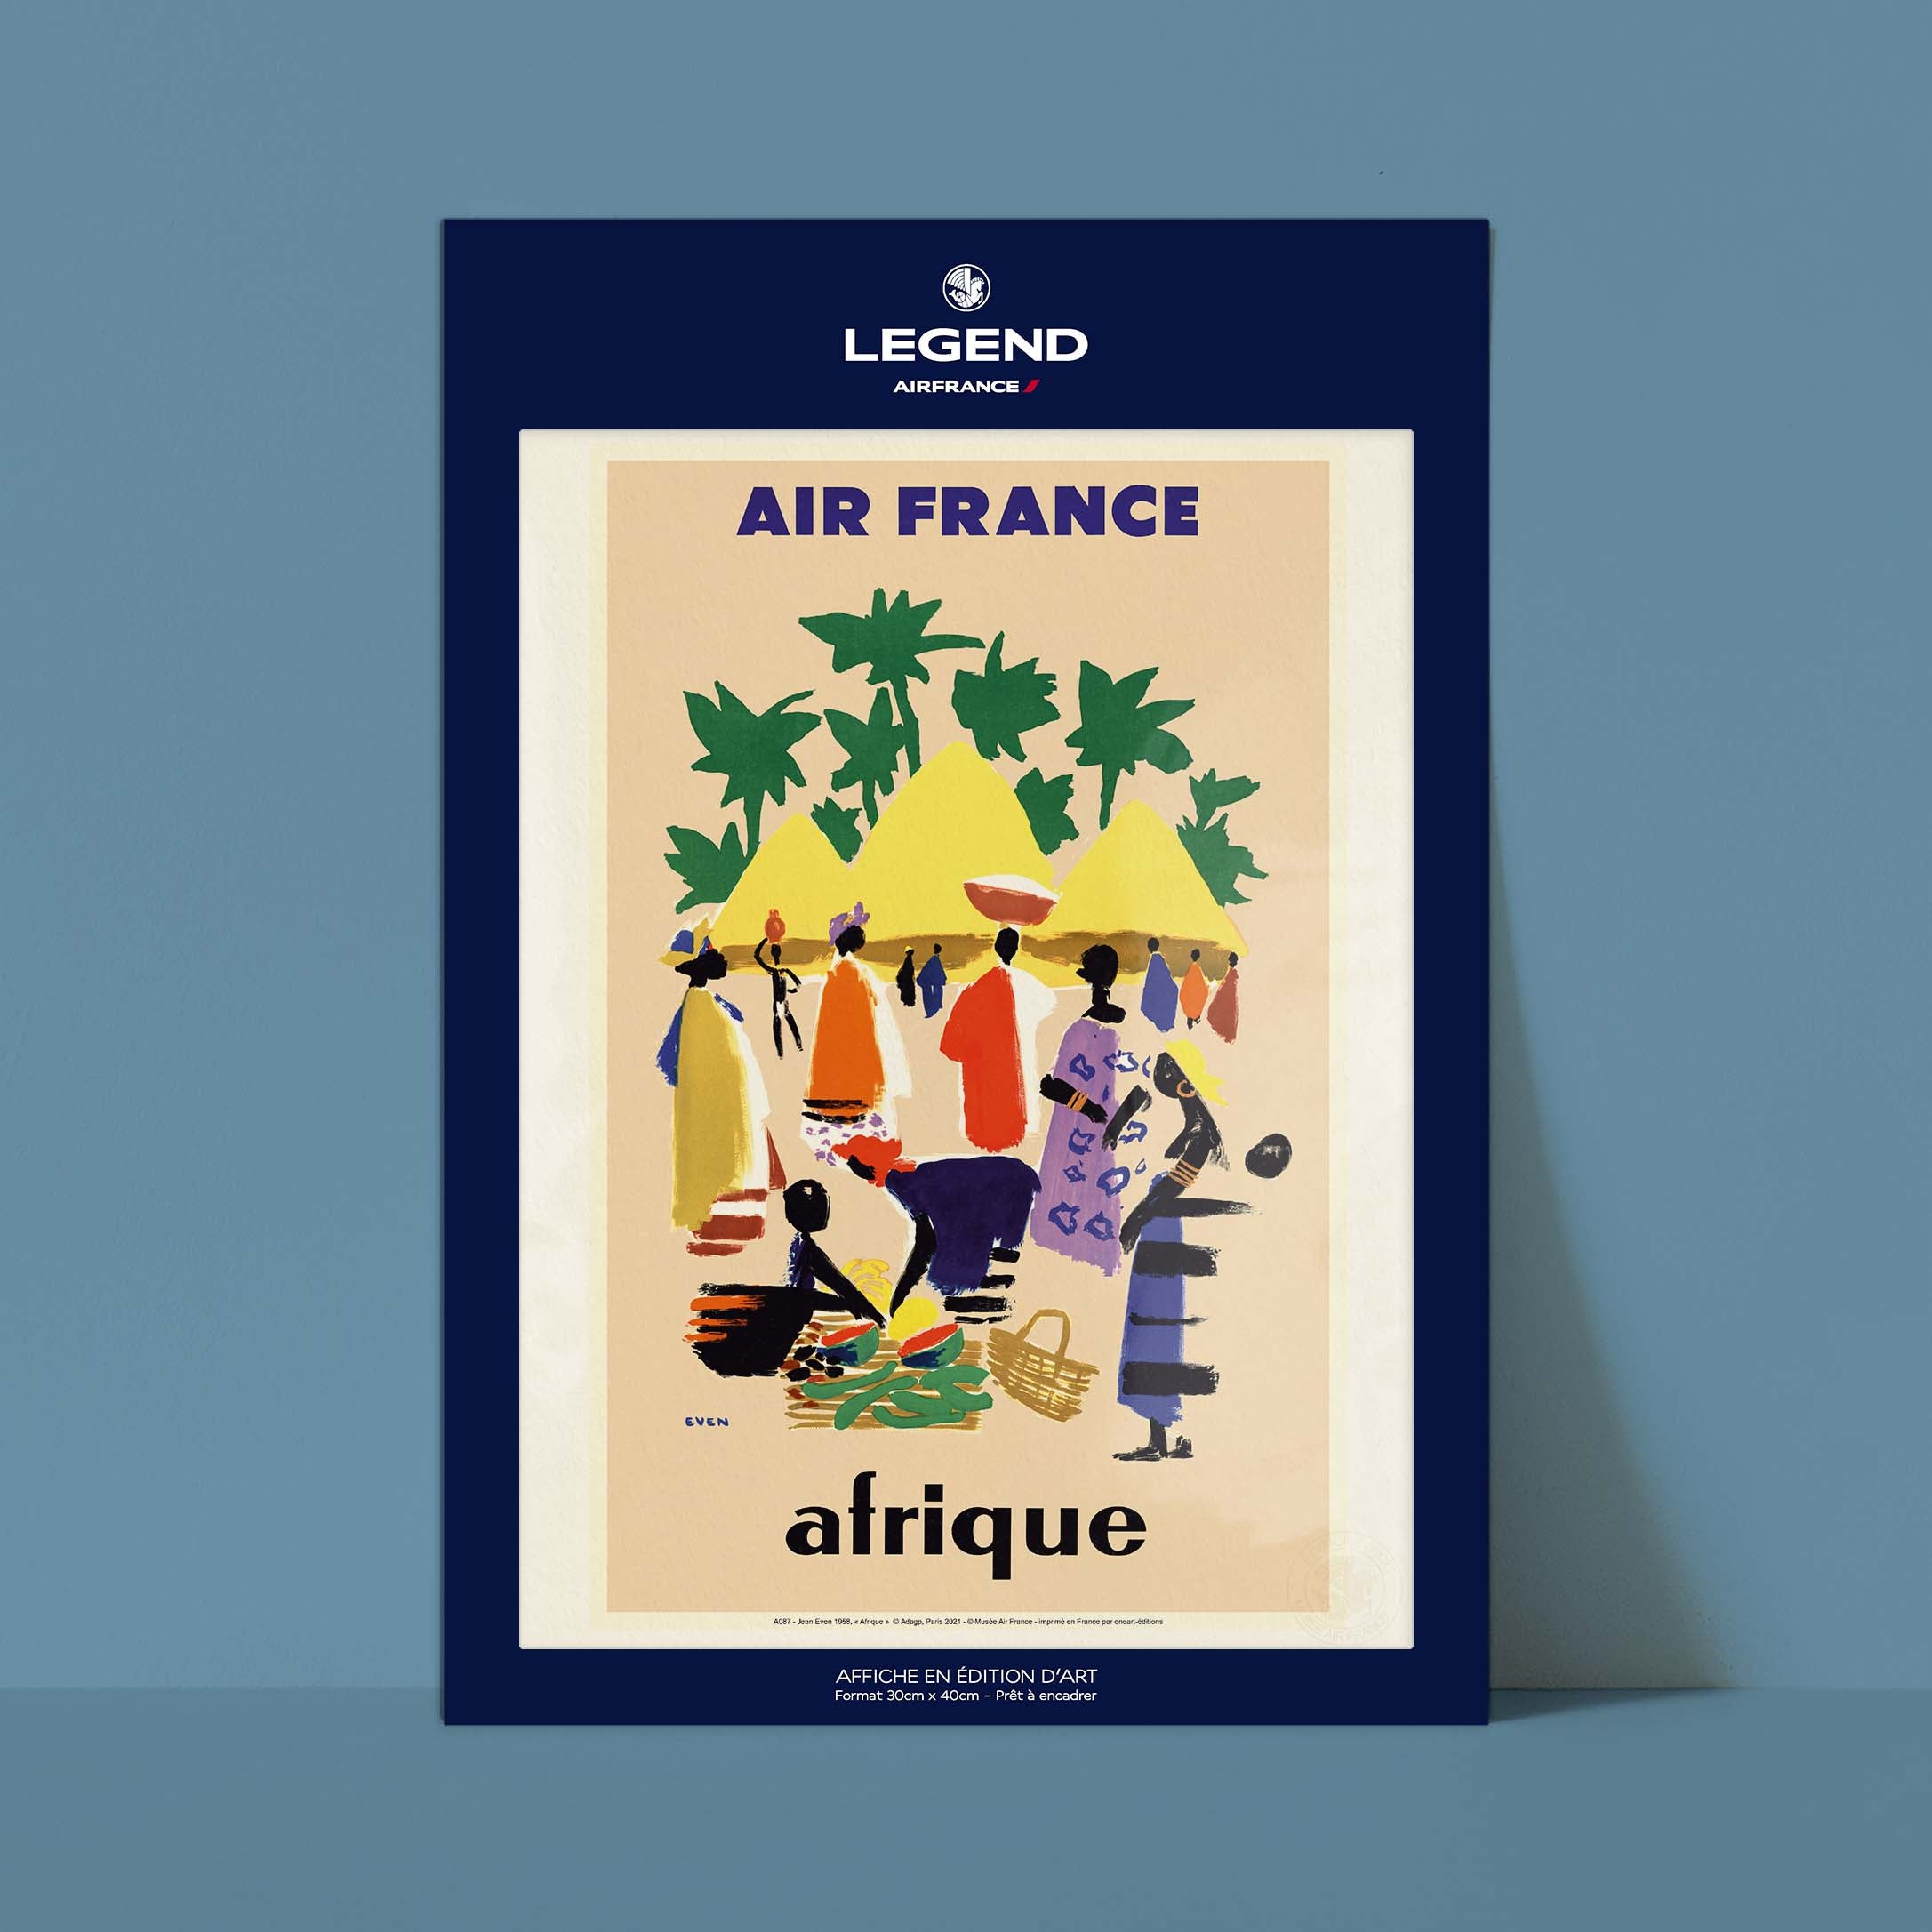 Affiche Air France - Afrique - Cases Village-oneart.fr